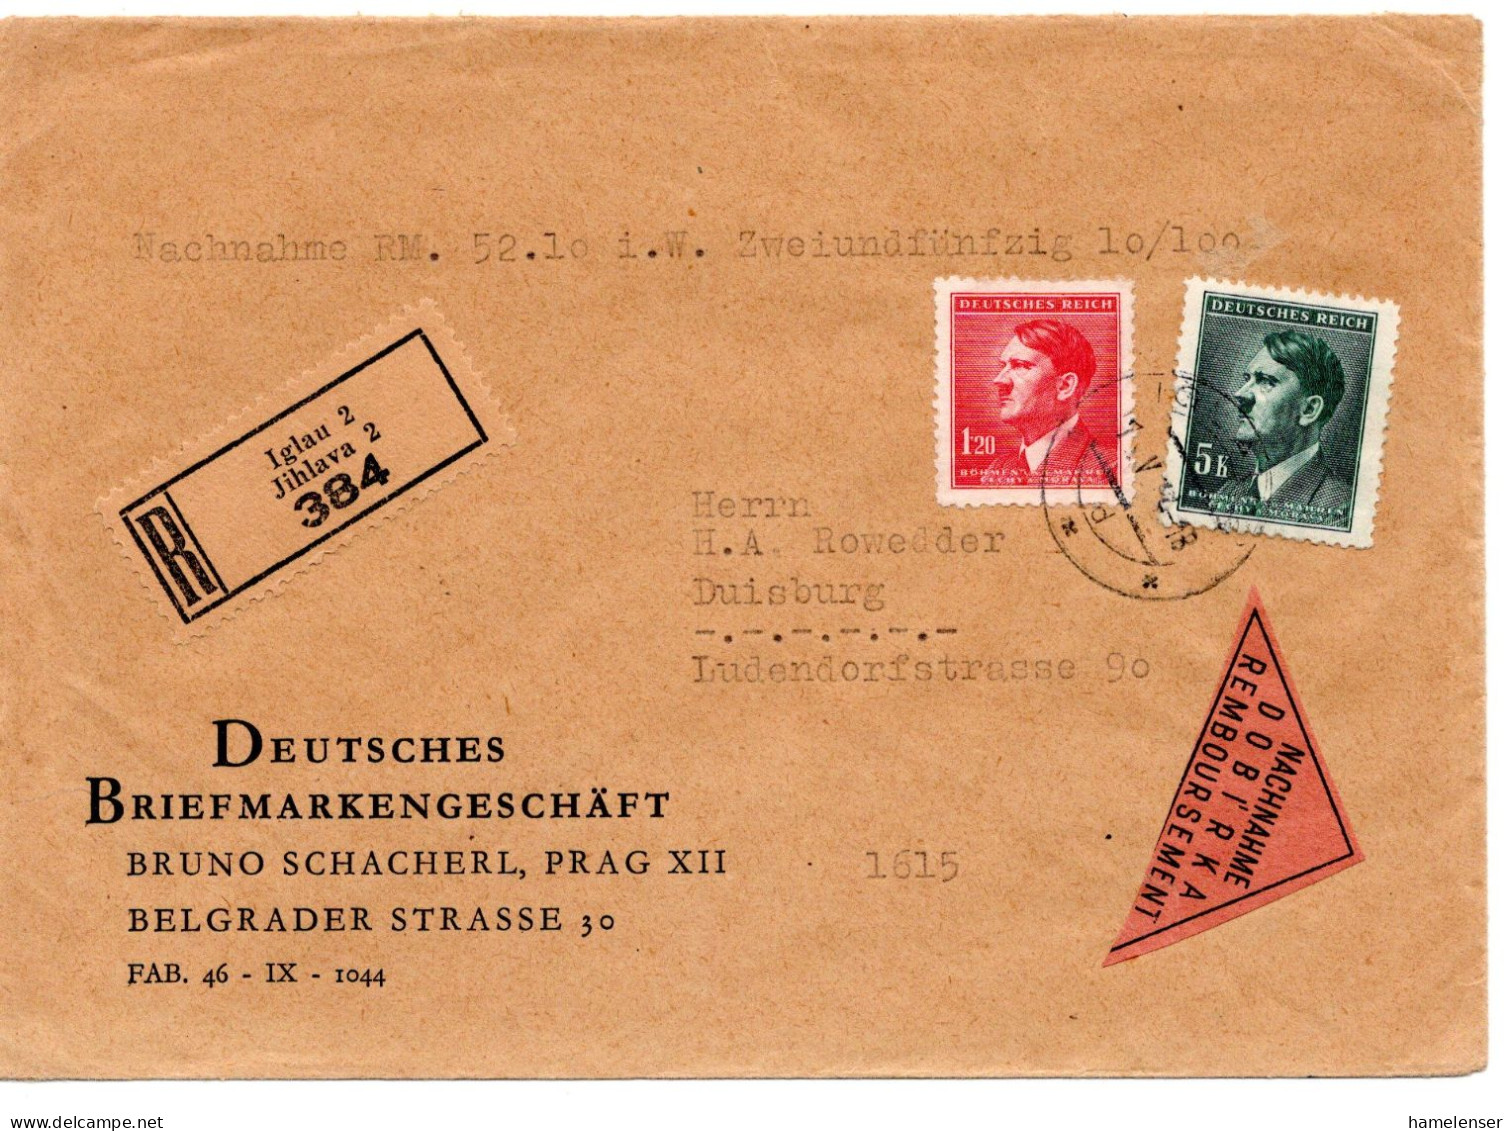 63286 - Deutsches Reich / Böhmen Und Mähren - 1944 - 5K Hitler MiF A R-NN-Bf IGLAU -> Duisburg - Covers & Documents